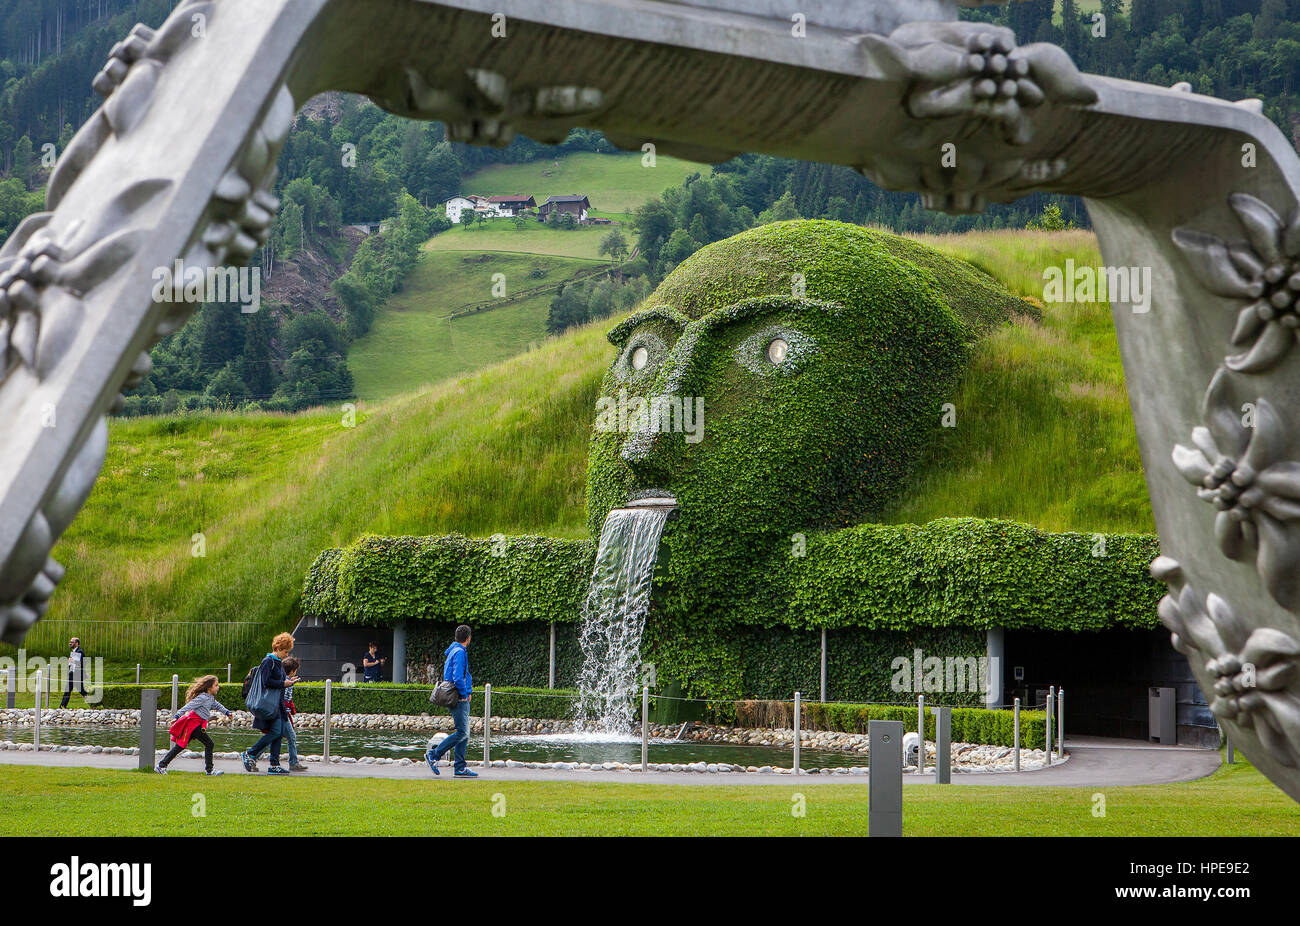 Swarovski Crystal Worlds, Austria: The world's most dazzling attraction